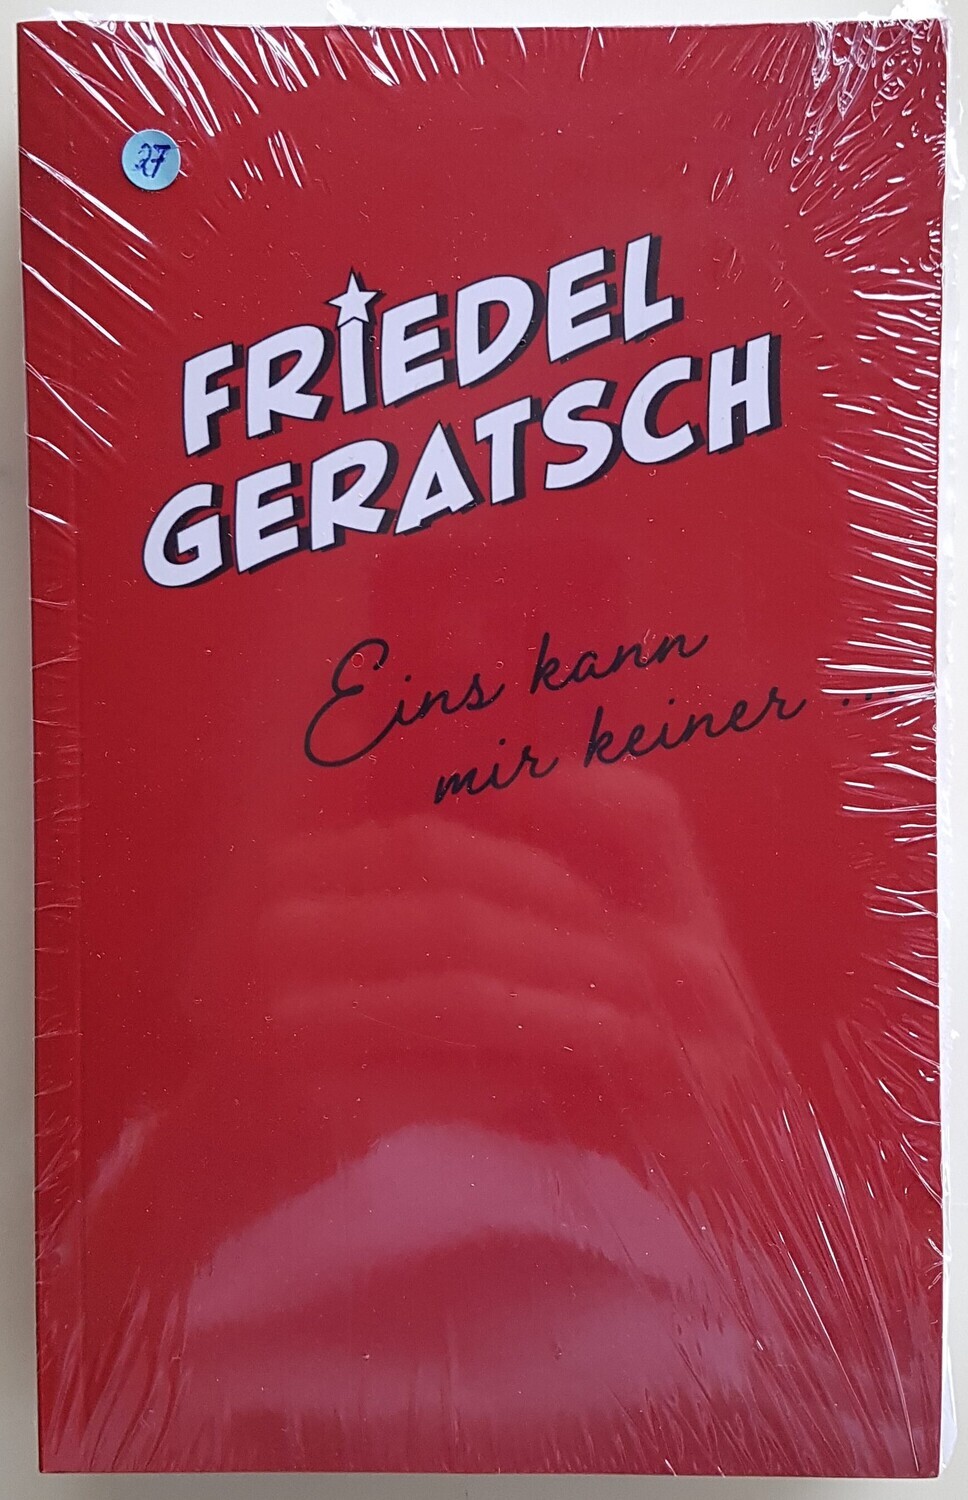 Friedel Geratsch - Eins kann mir keiner Buch &amp; CD